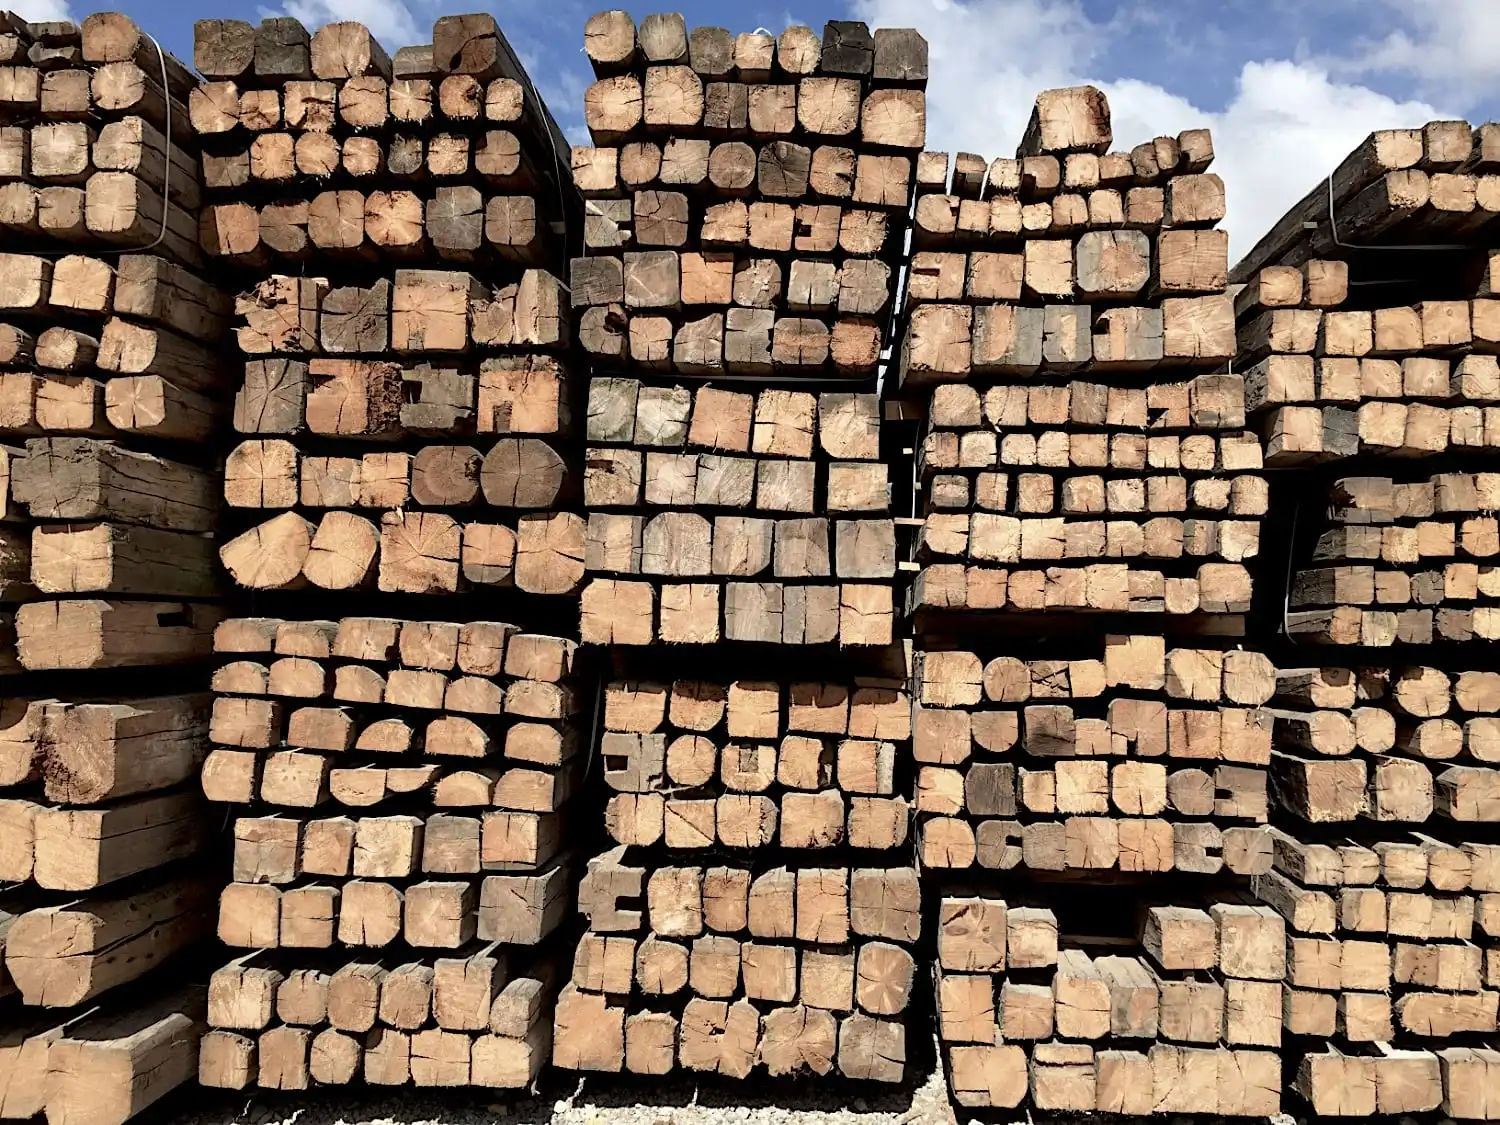 Des piles de morceaux de bois coupés de différentes tailles, y compris des poutres anciennes de récupération, soigneusement empilées à l'extérieur sous un ciel dégagé.